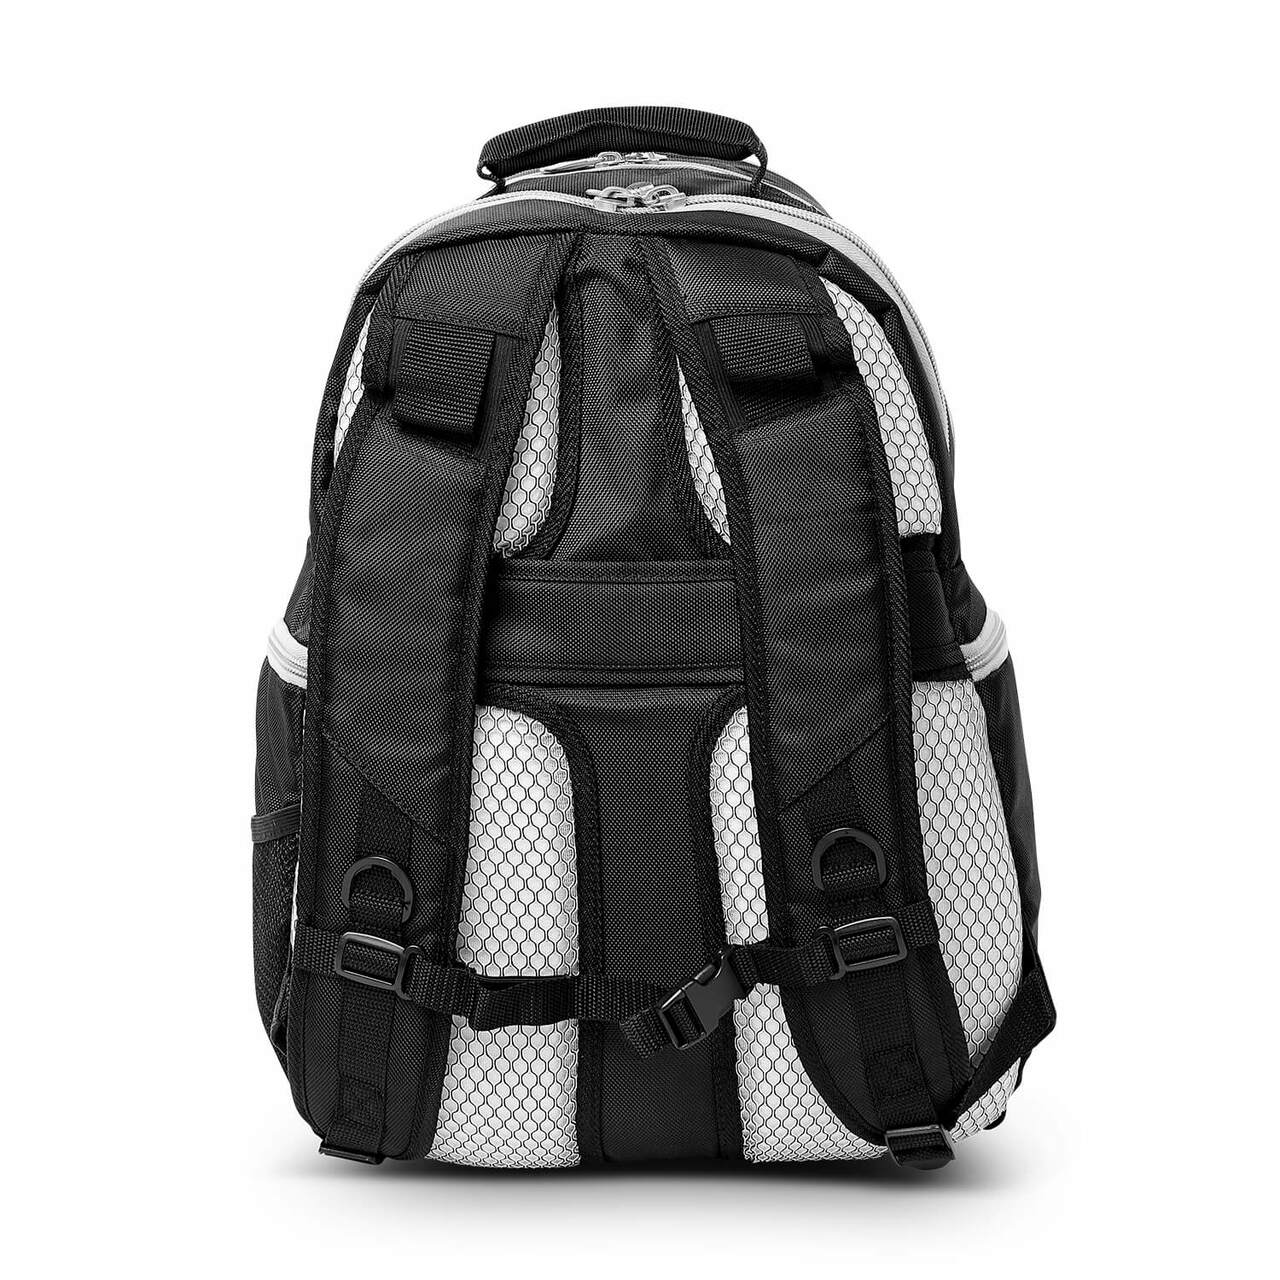 Hokies Backpack | Virginia Tech Hokies Laptop Backpack